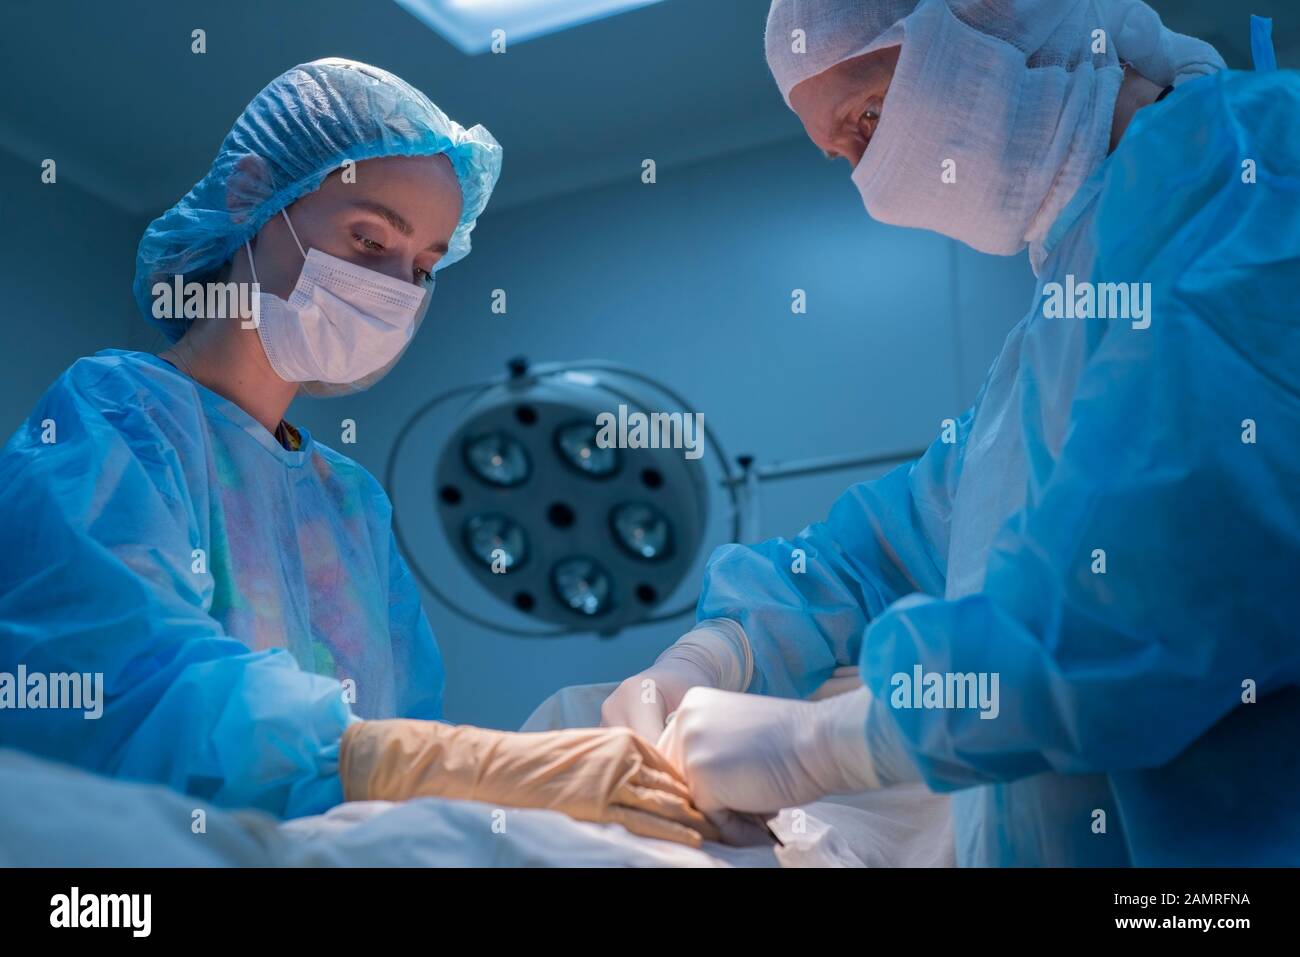 Операция из мужчины в женщину видео. Мужчина в женщину операция. Уролог операции мужичина.